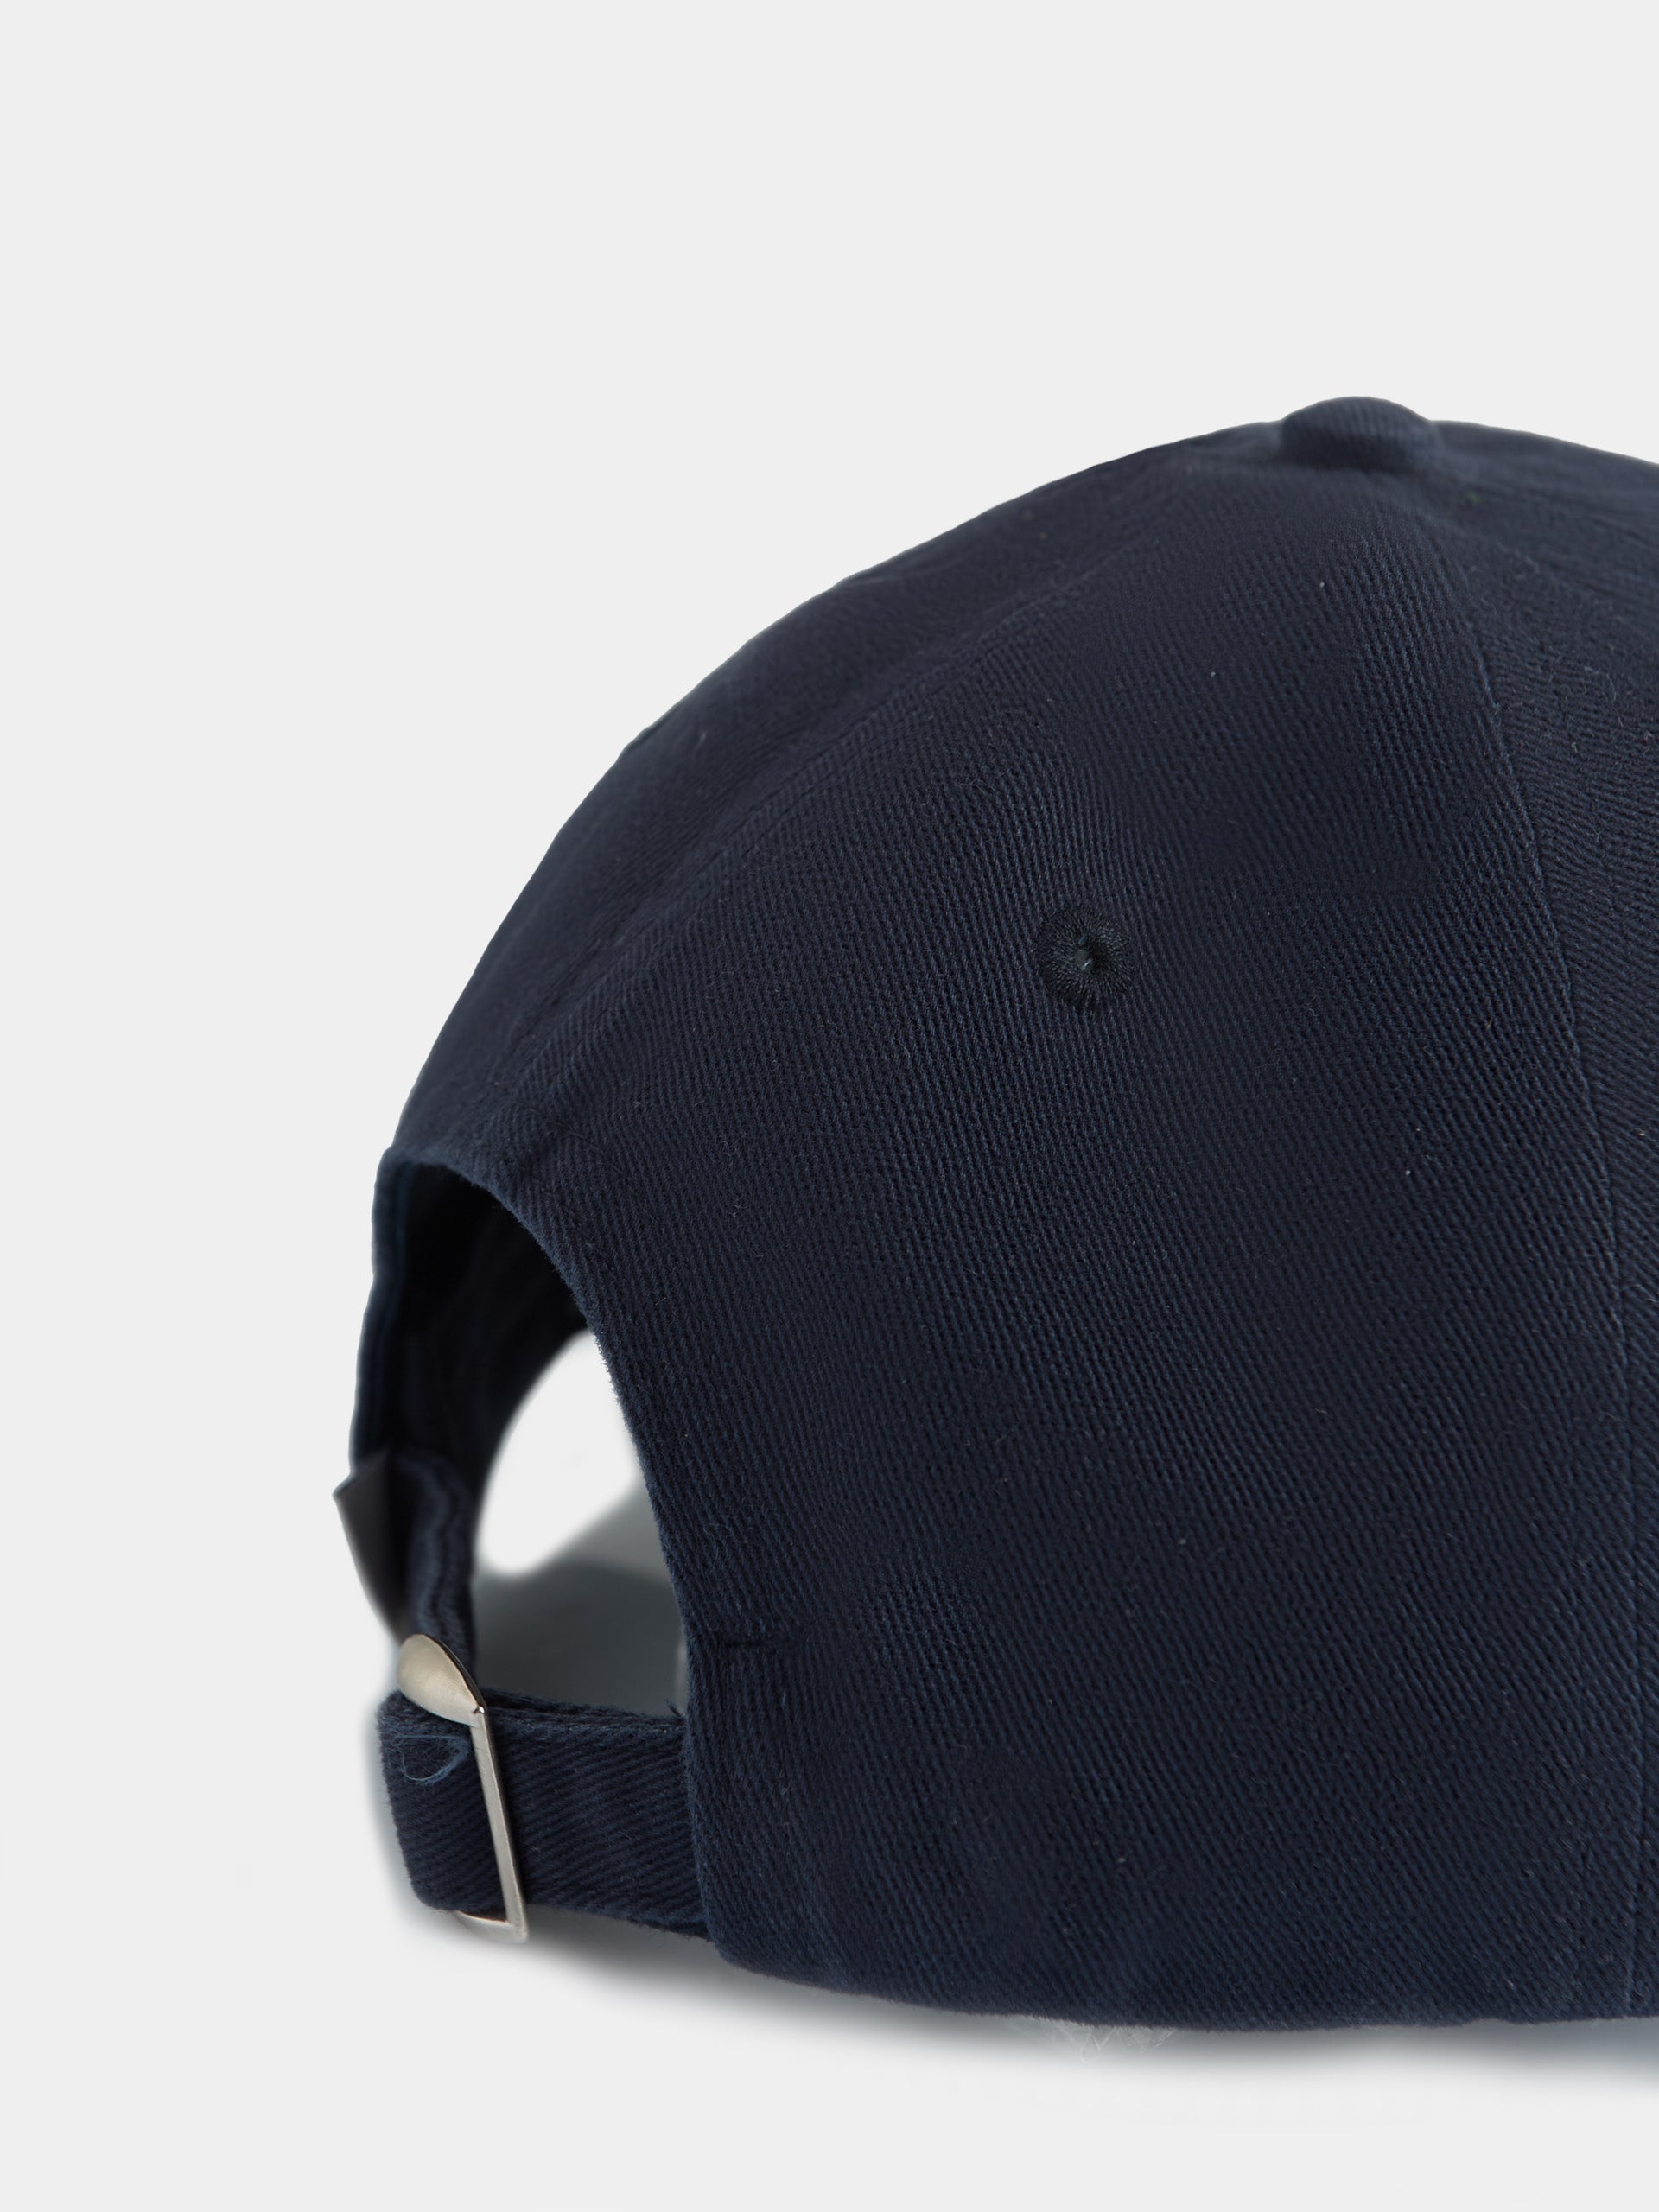 Plain navy blue racquet cap